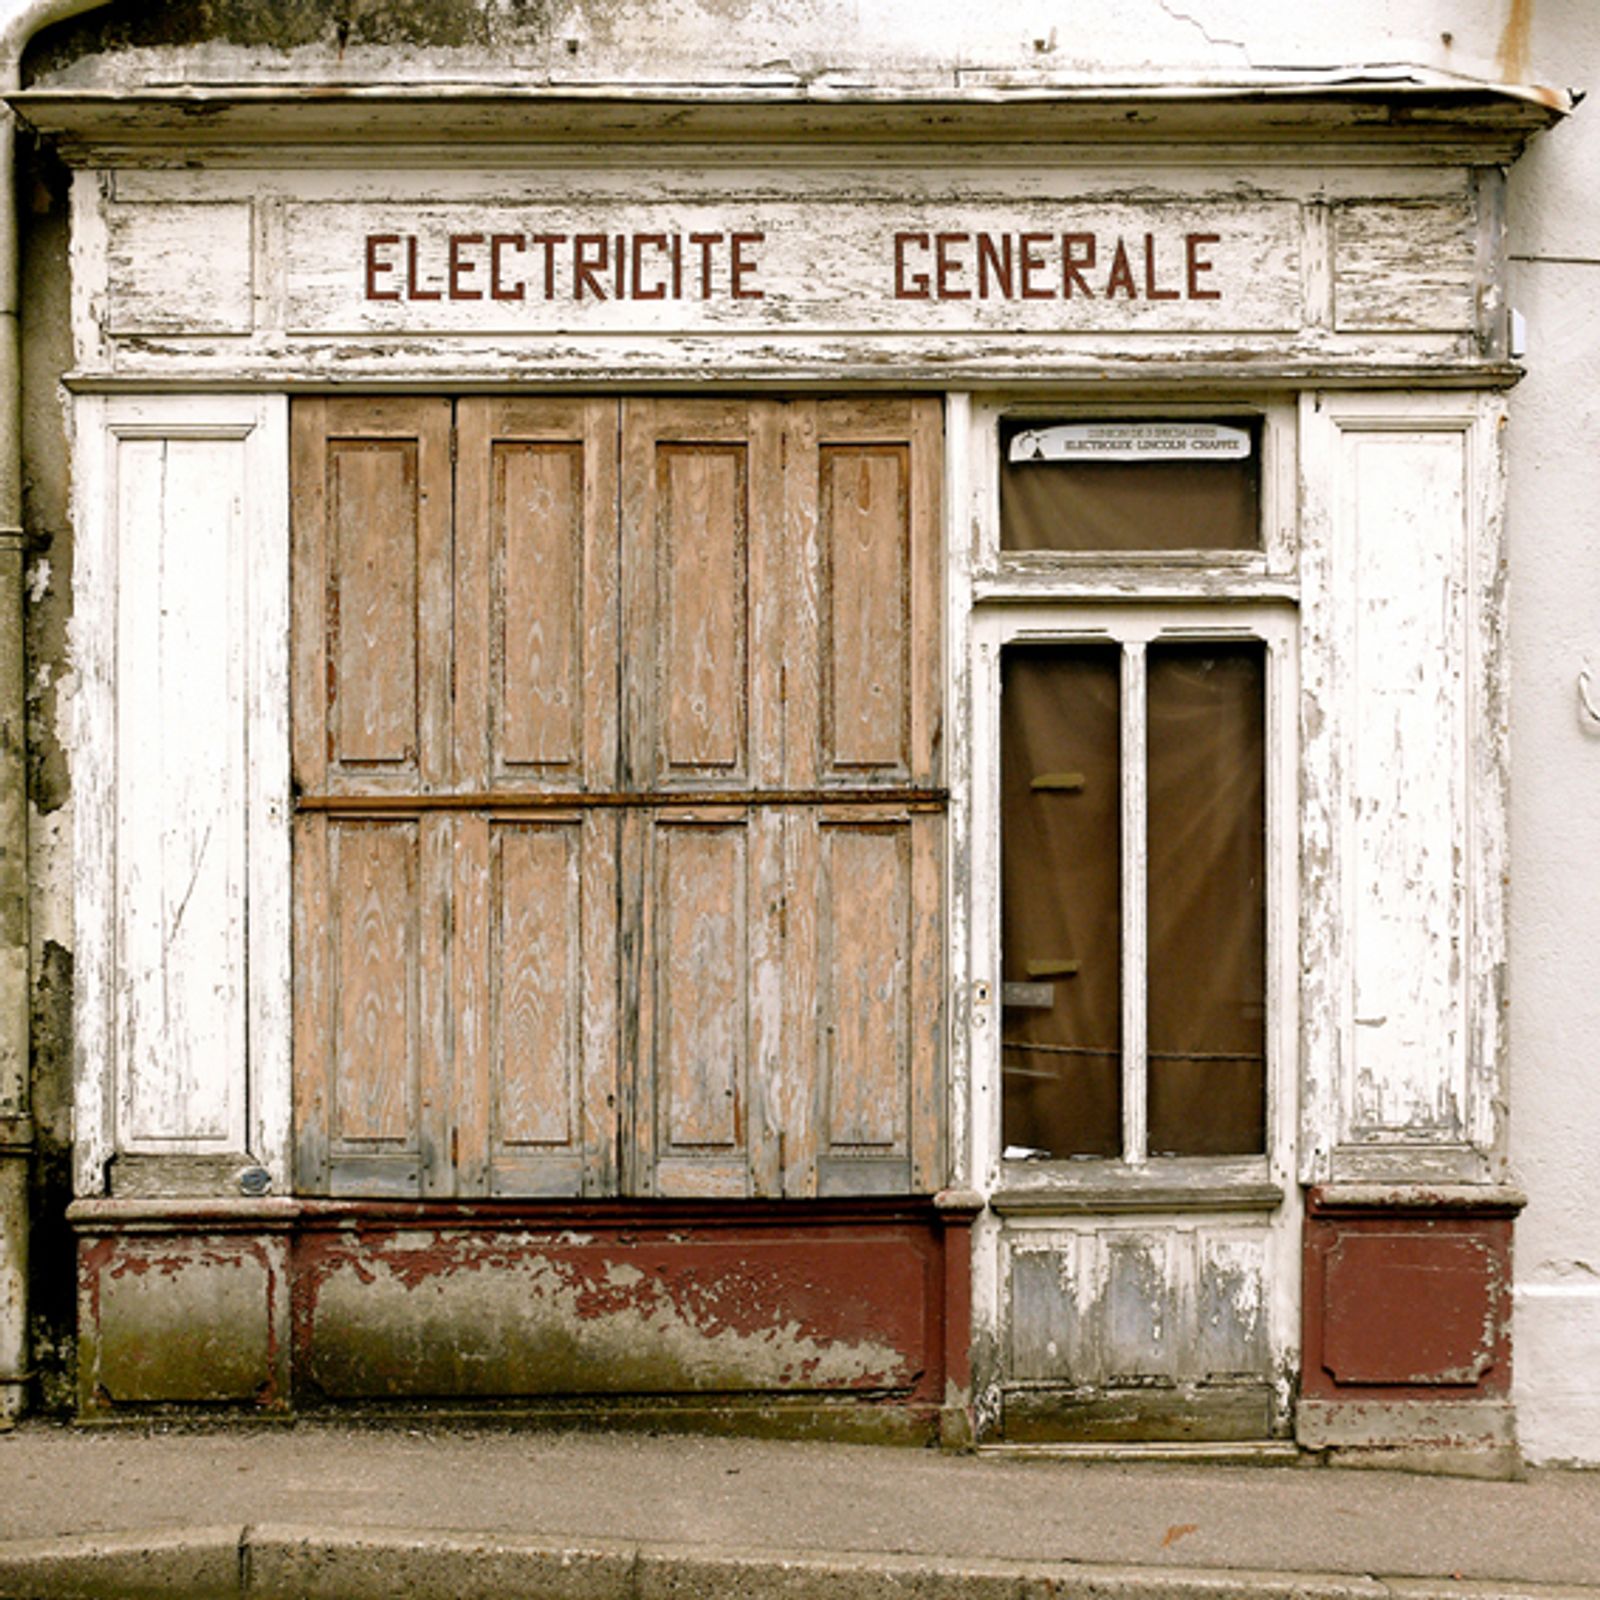 © Thibaut Derien - Electricité générale